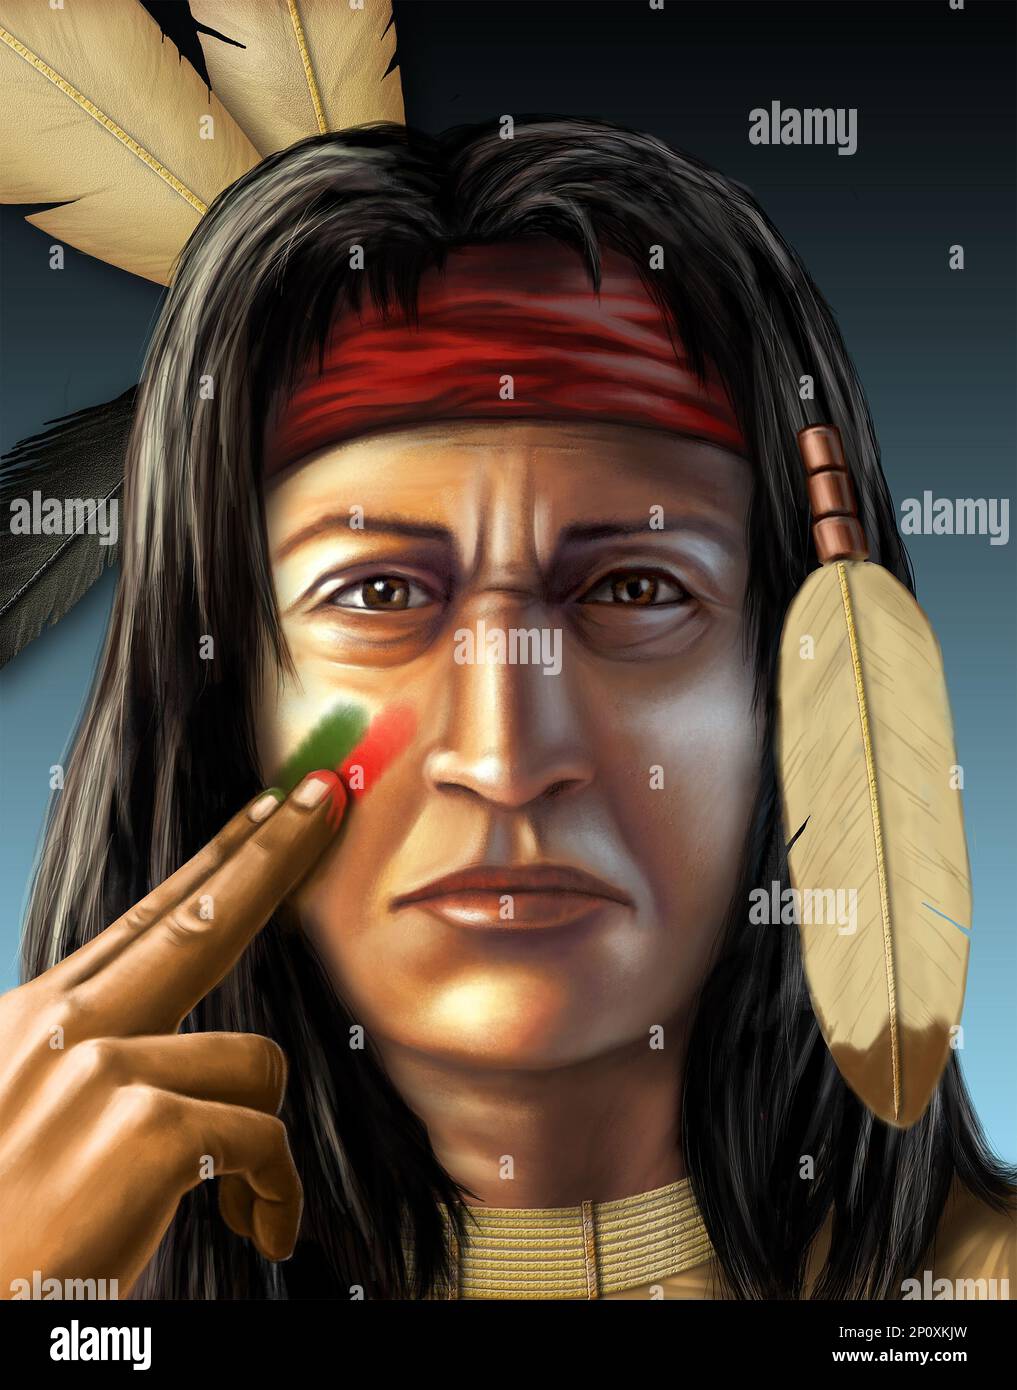 Un guerrier indien américain peint son visage. Illustration numérique, figure créée à partir de zéro, aucune autorisation de modèle n'est nécessaire. Banque D'Images